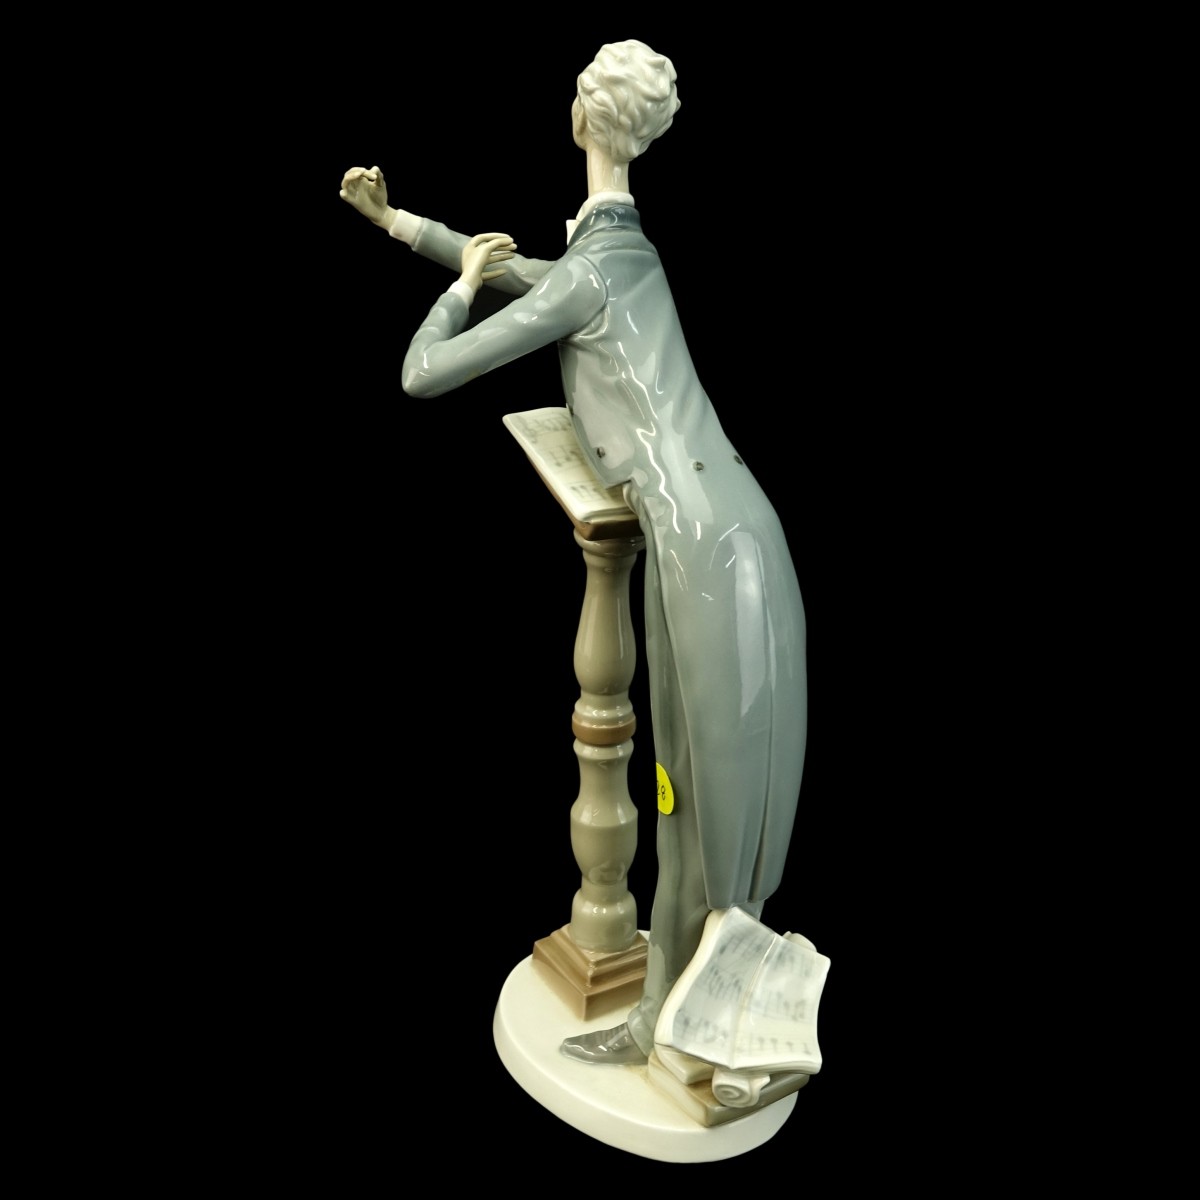 Lladro "Orchestra Conductor" Figurine